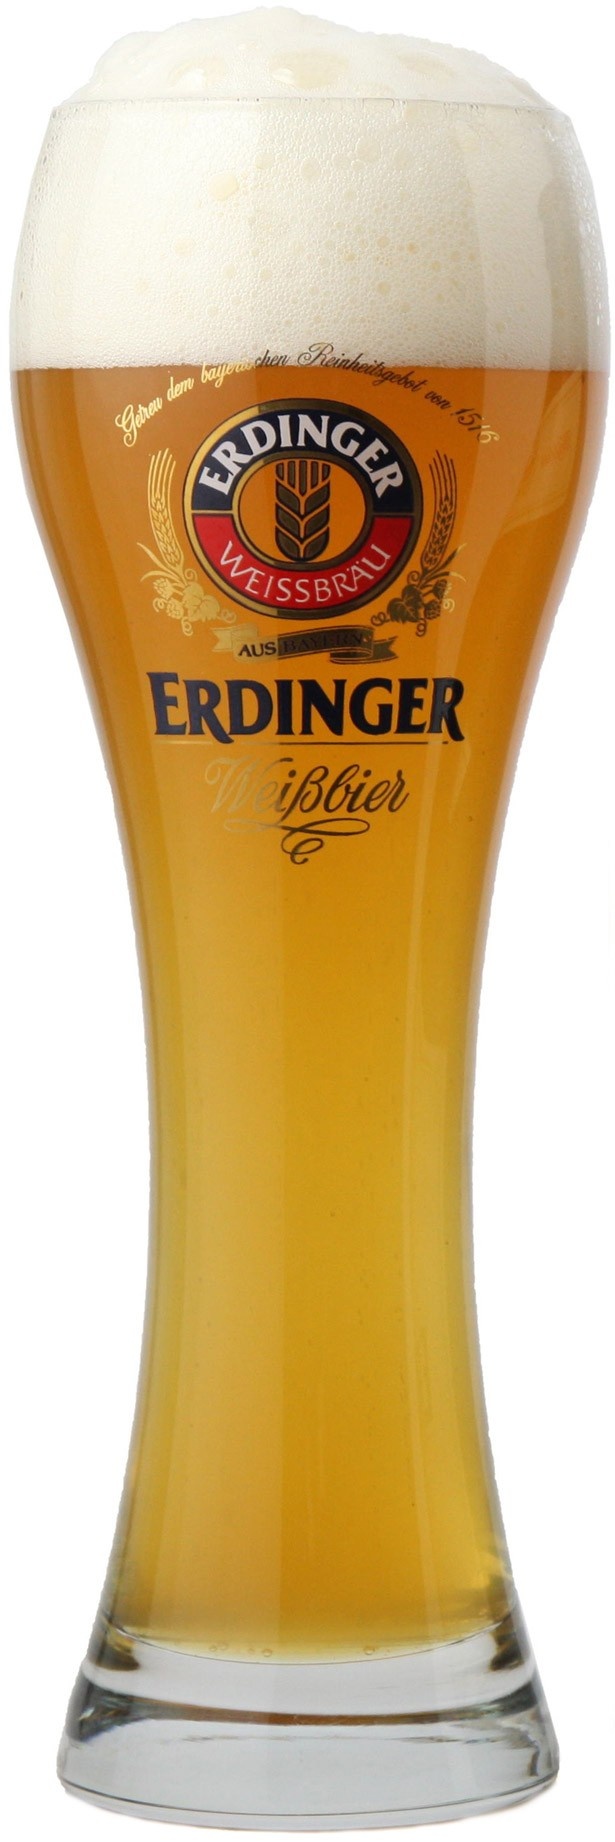 背の高い「ヴァイツェングラス」は、ヴァイスビア(白ビール)特有の香りをグラスに閉じ込める